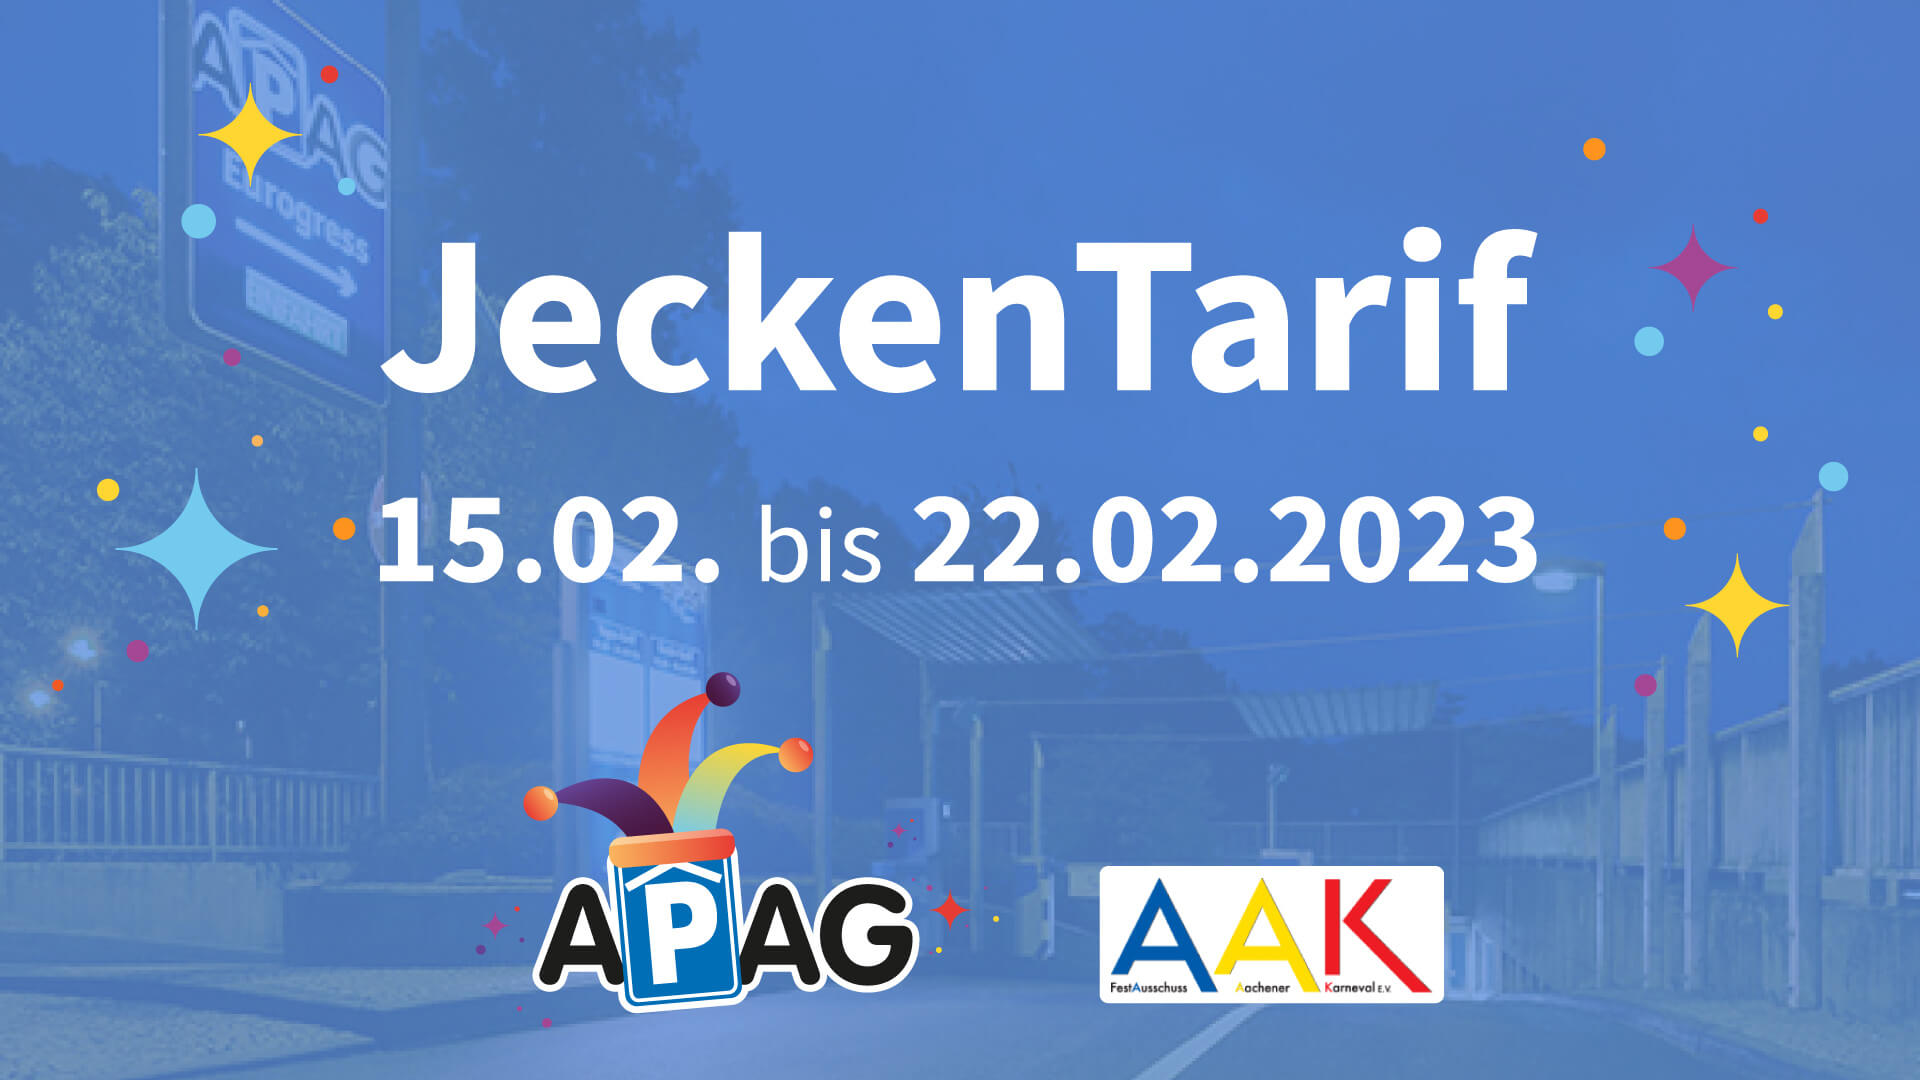 JeckenTarif ab dem 15.02.2023 bis einschließlich Aschermittwoch 22.02.2023 im APAG Parkhaus Eurogress